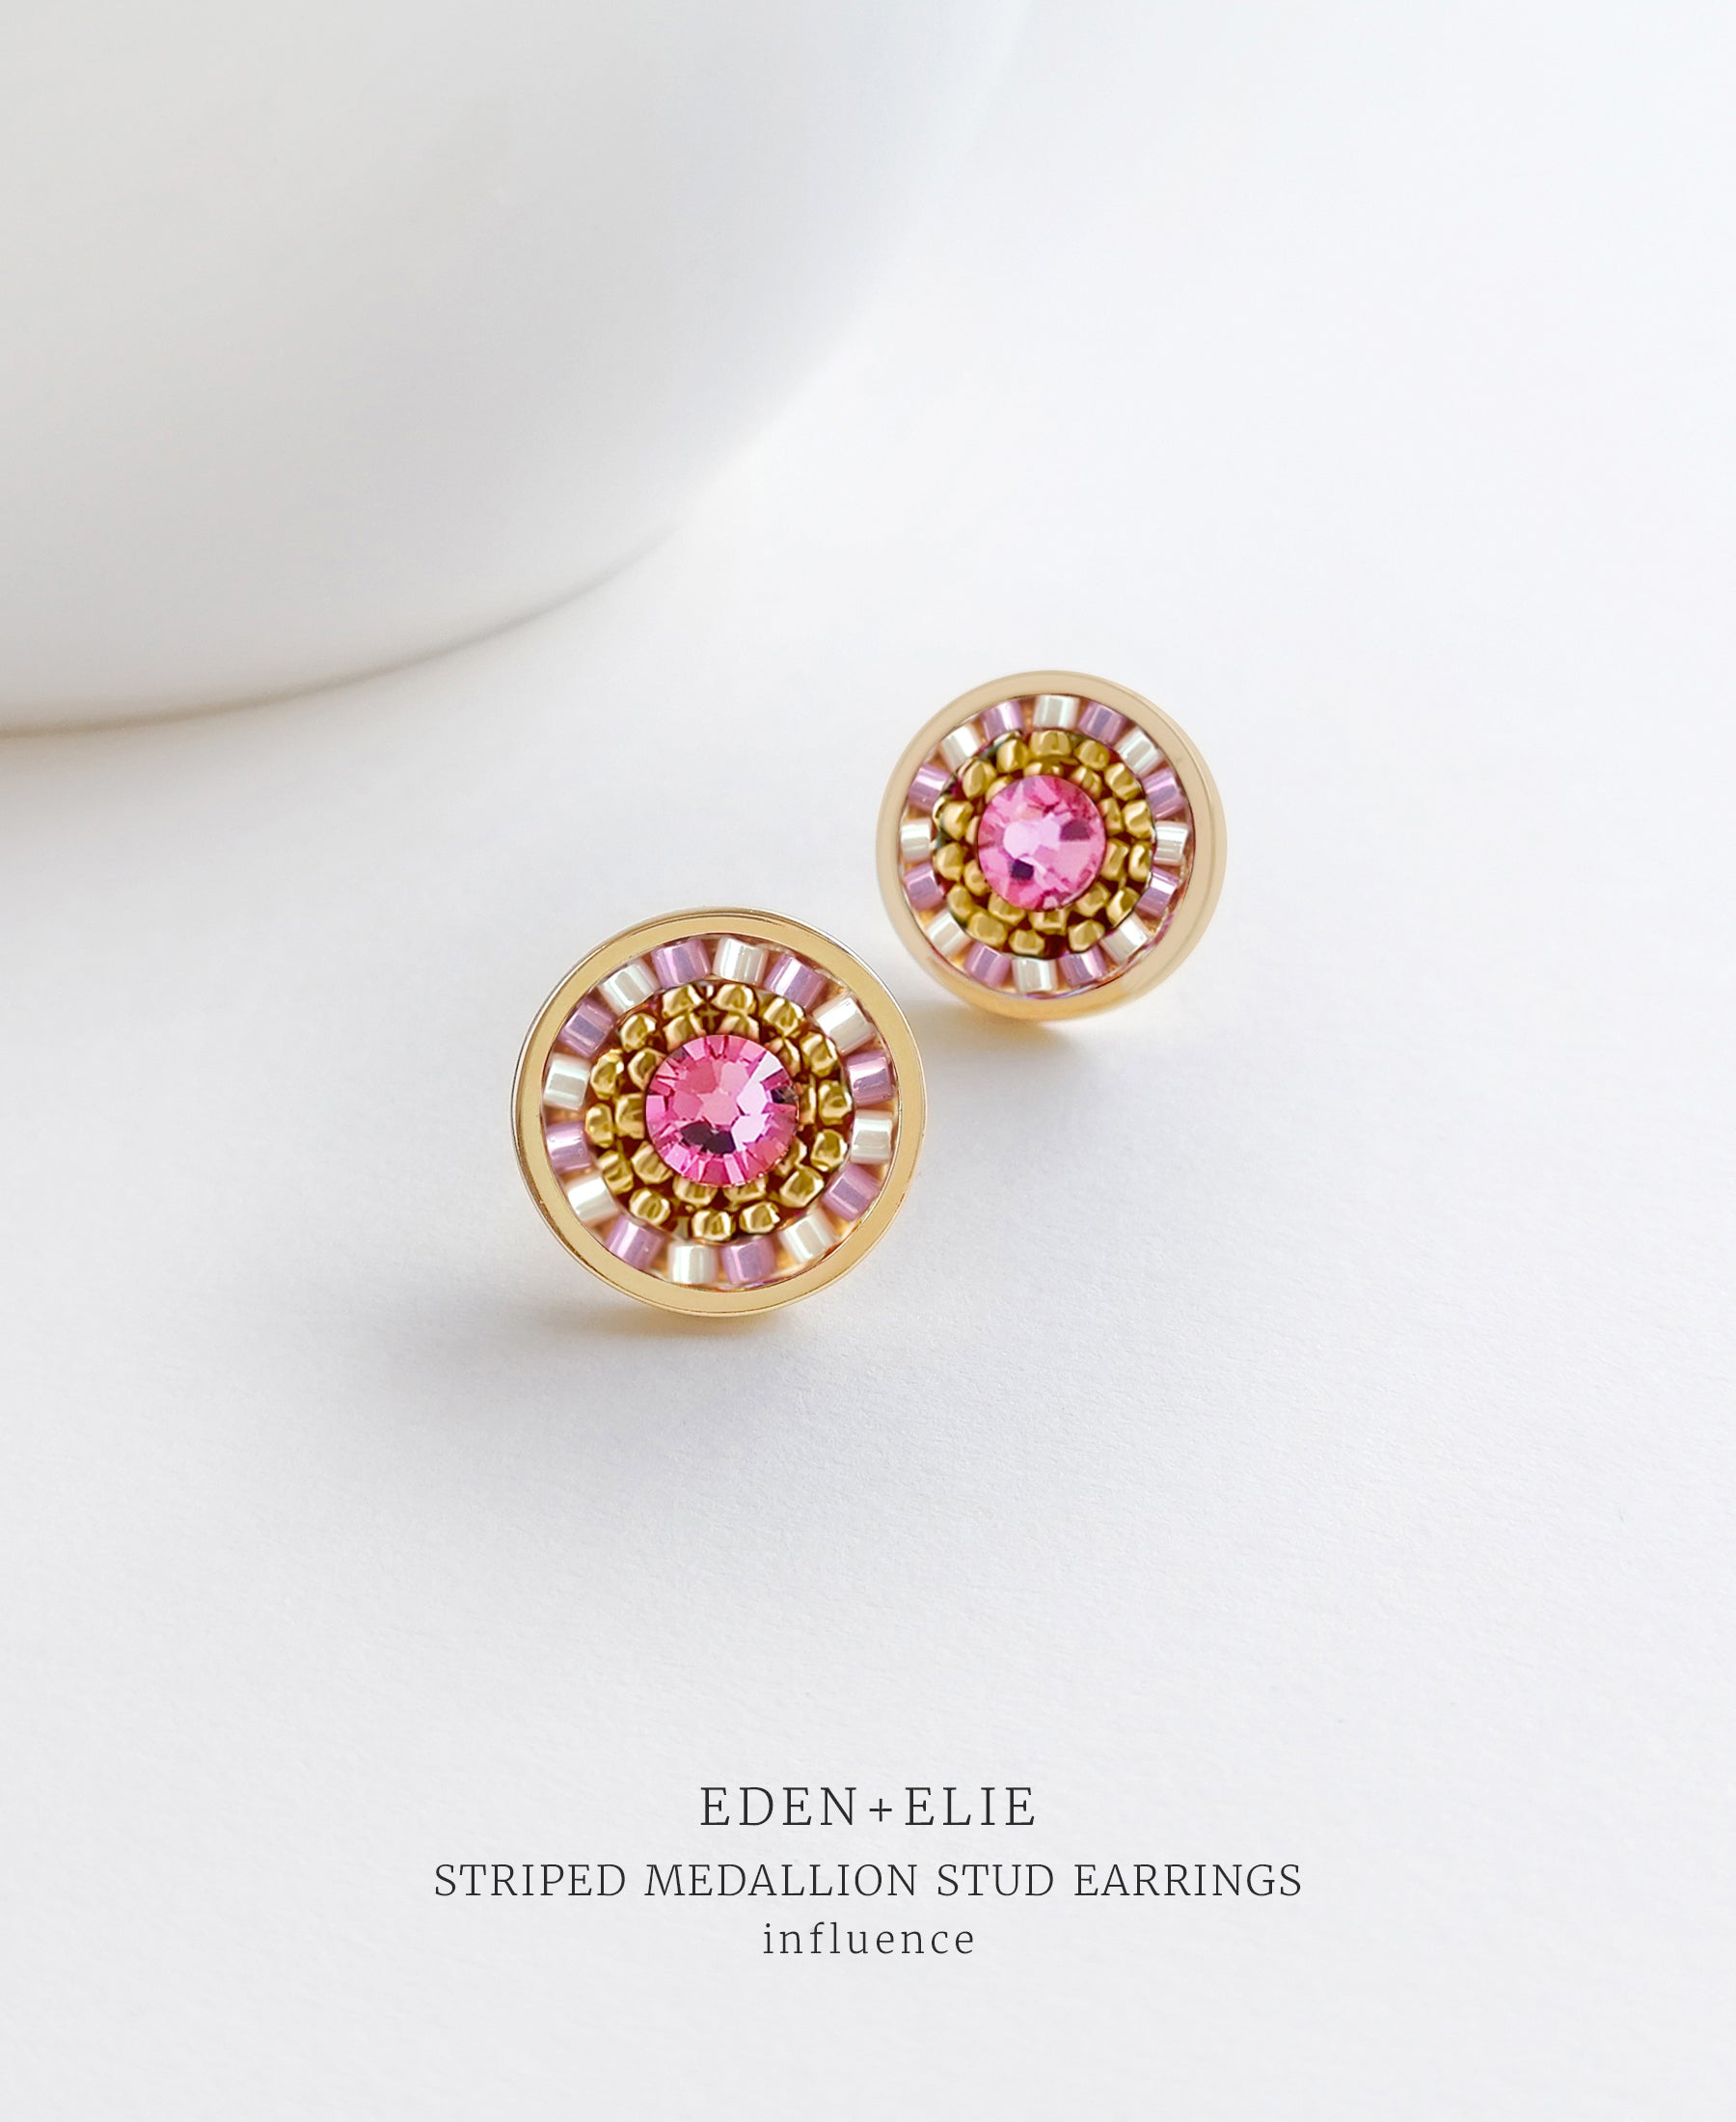 EDEN + ELIE Striped Medallion stud earrings - Influence